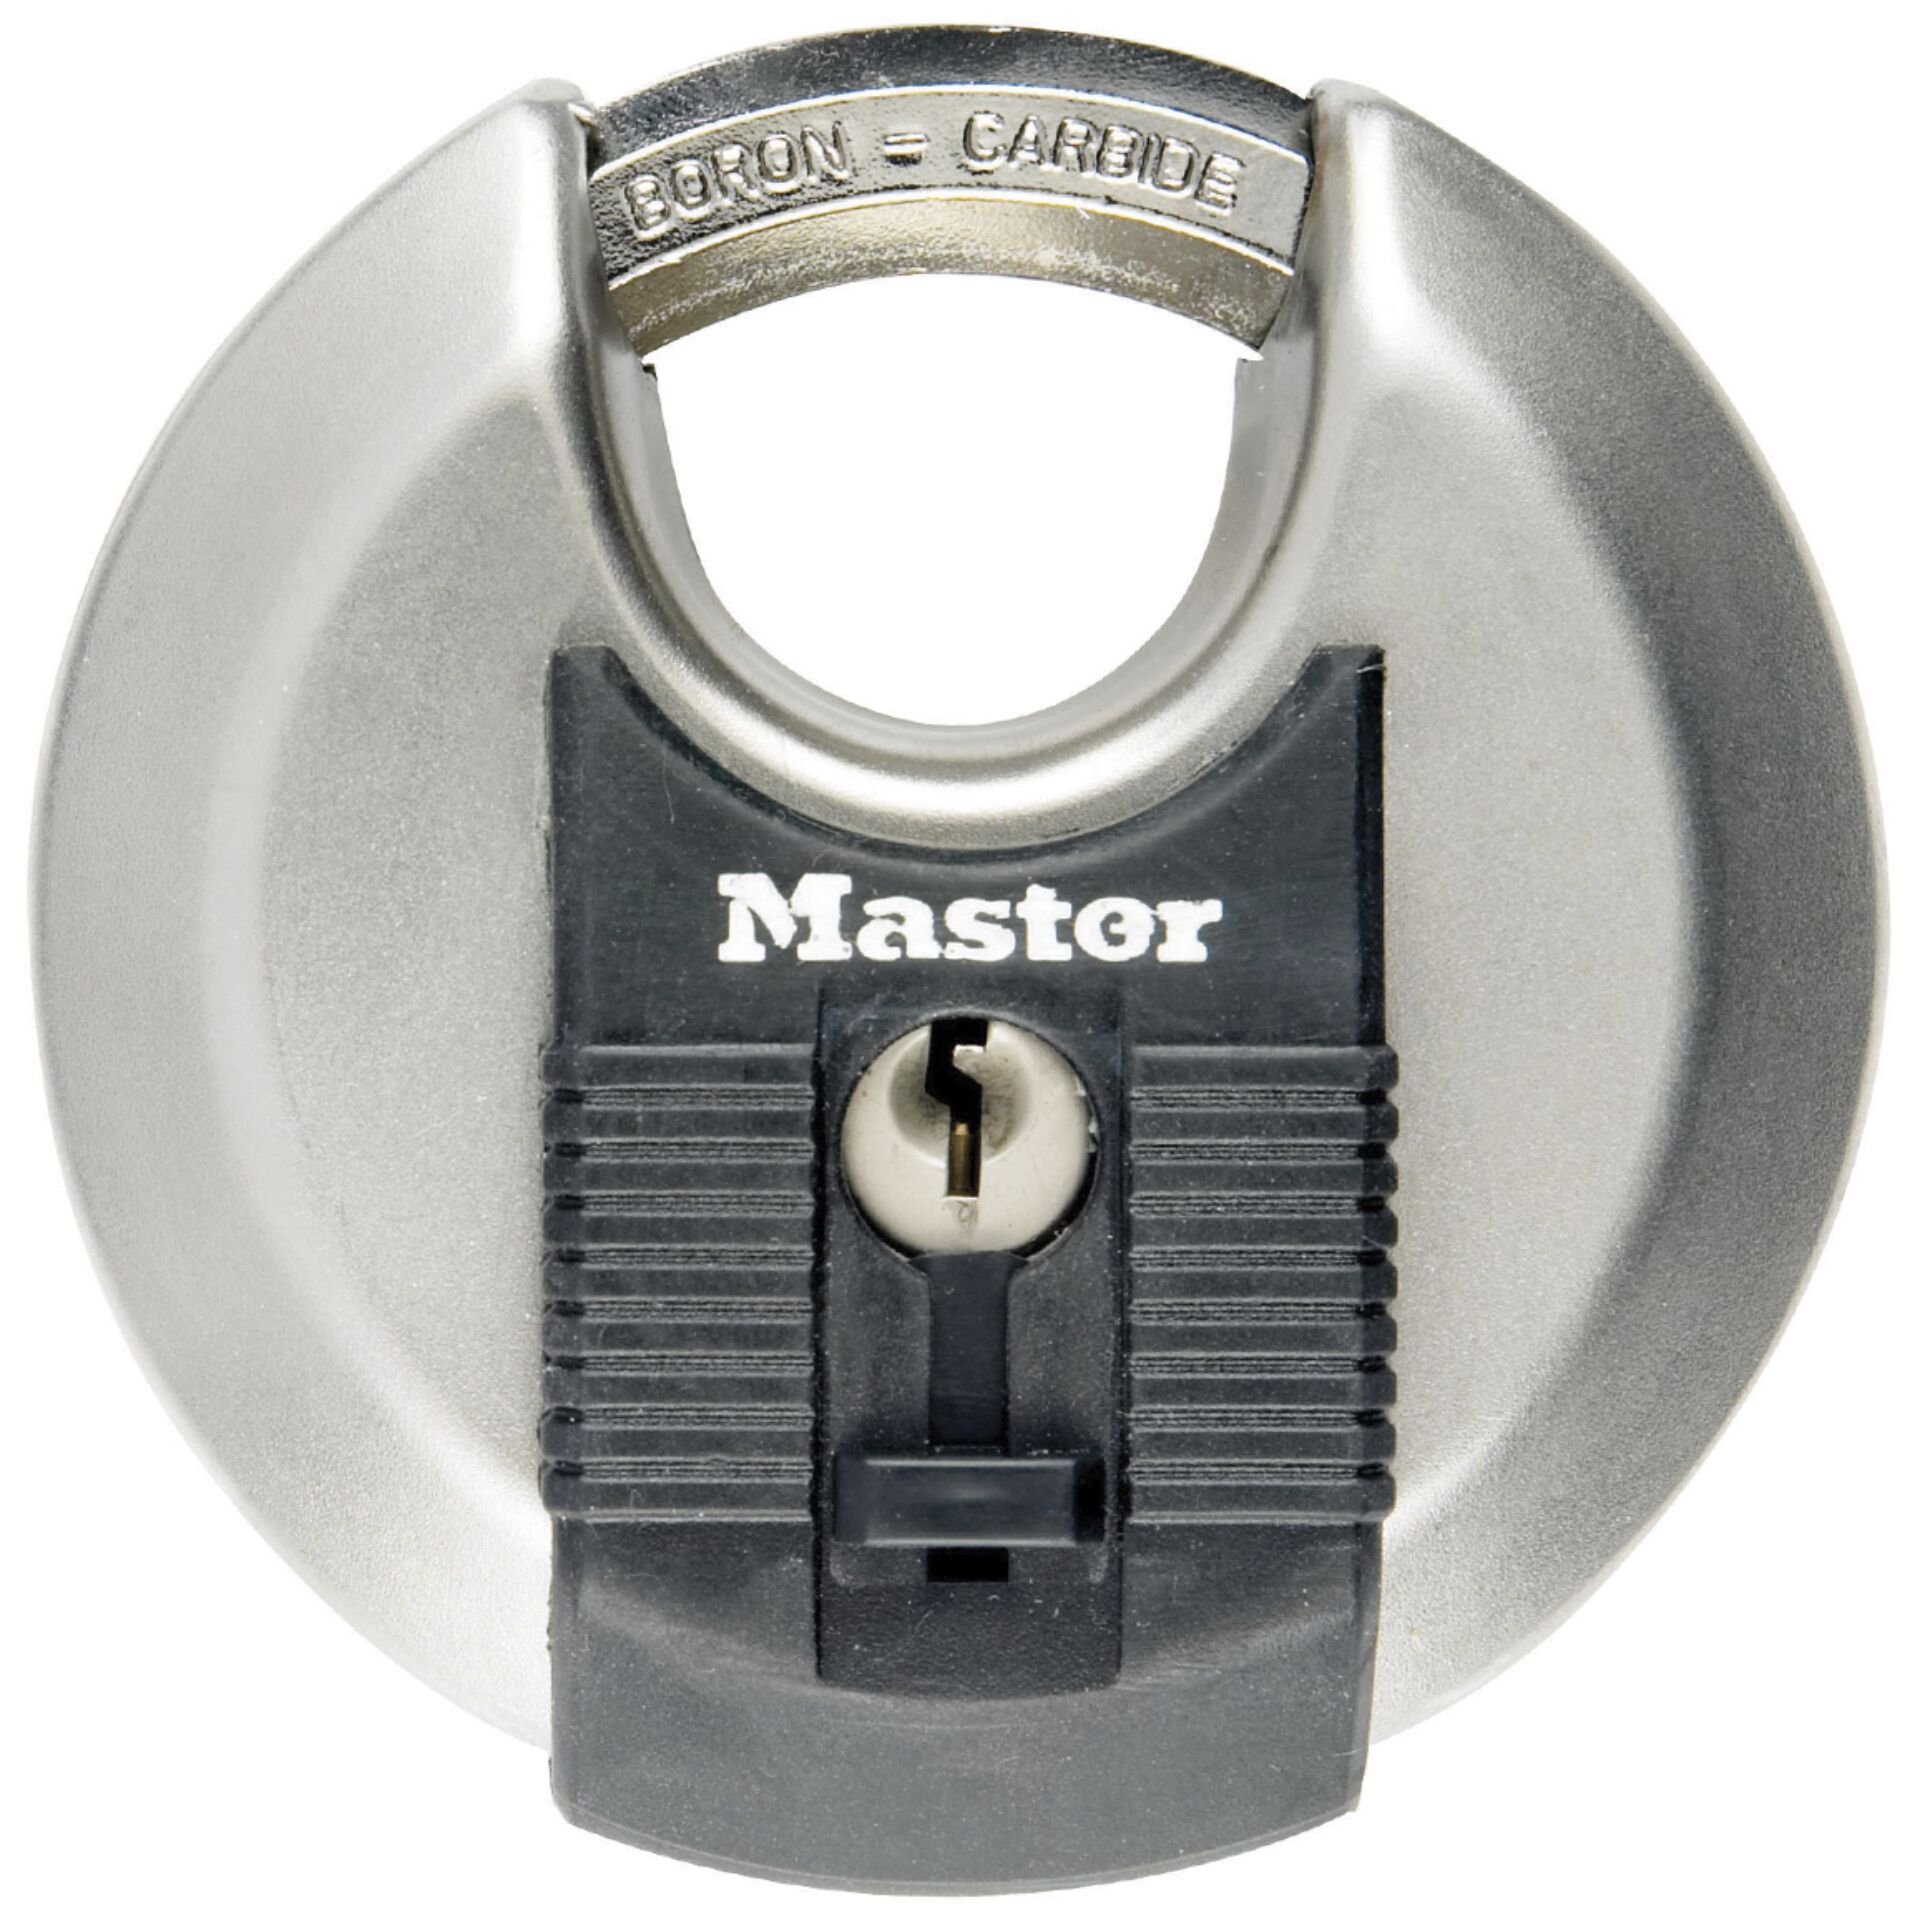 Master Lock lucchetto con livello di sicurezza 8 M40EURDCC